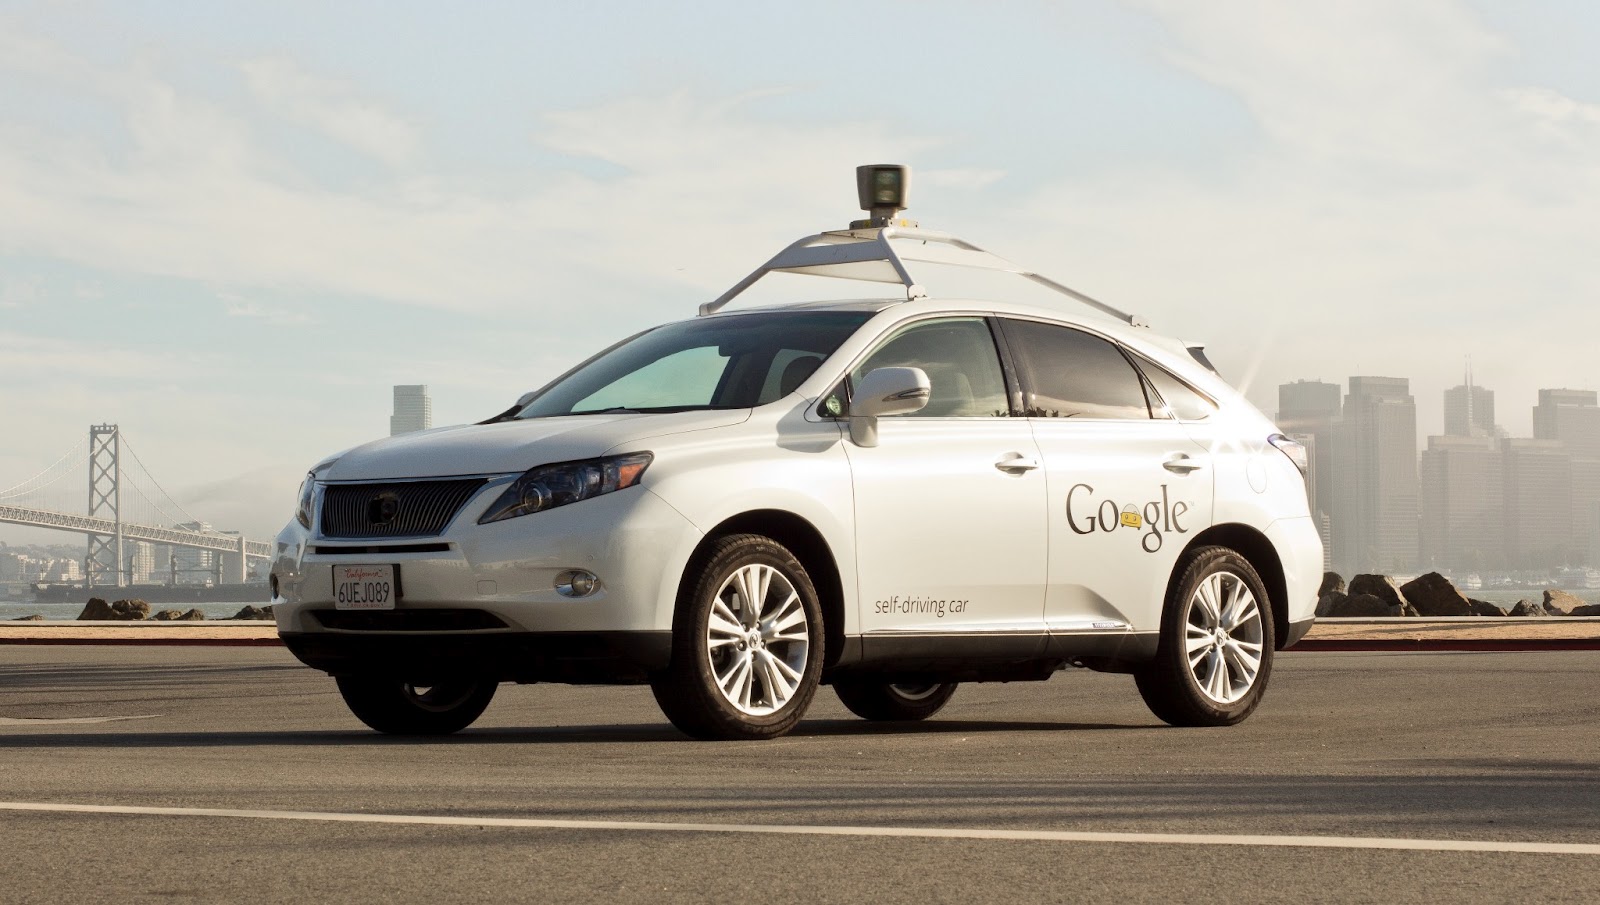 جوجل تخطط لإنتاج سيارتها الخاصة ذاتية القيادة